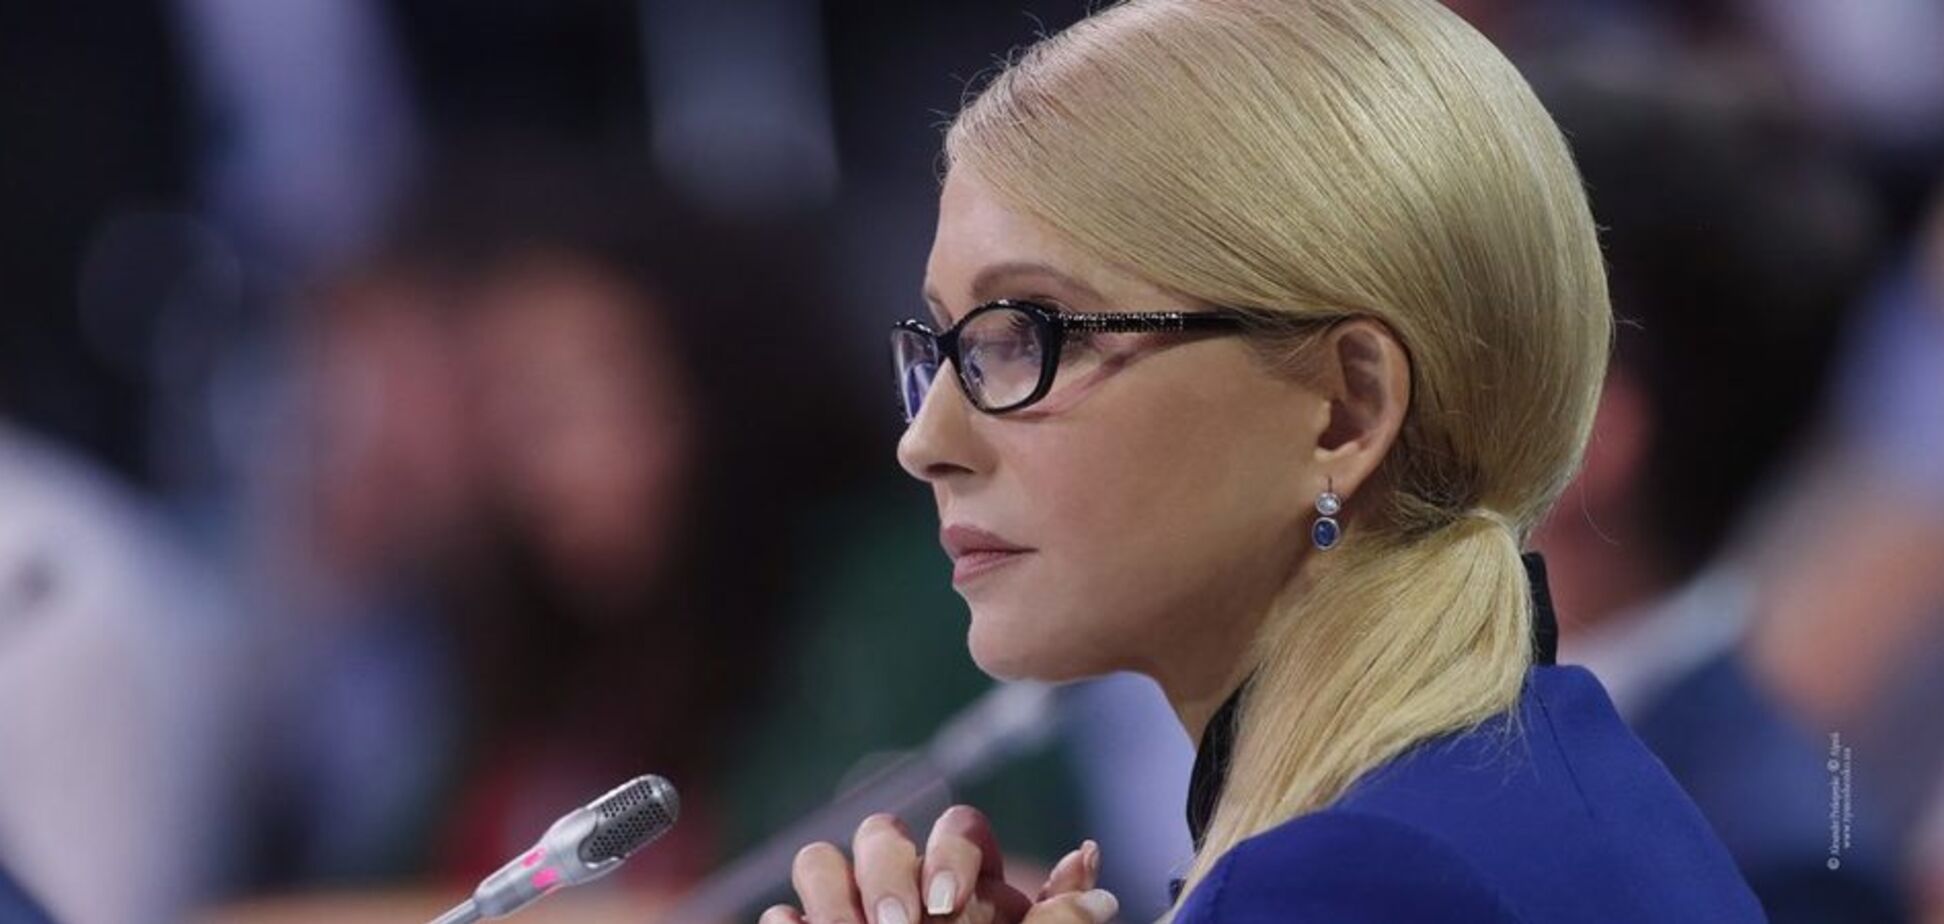 Тимошенко: ми знімемо всі податки для заробітчан на грошові перекази і посилки в Україну